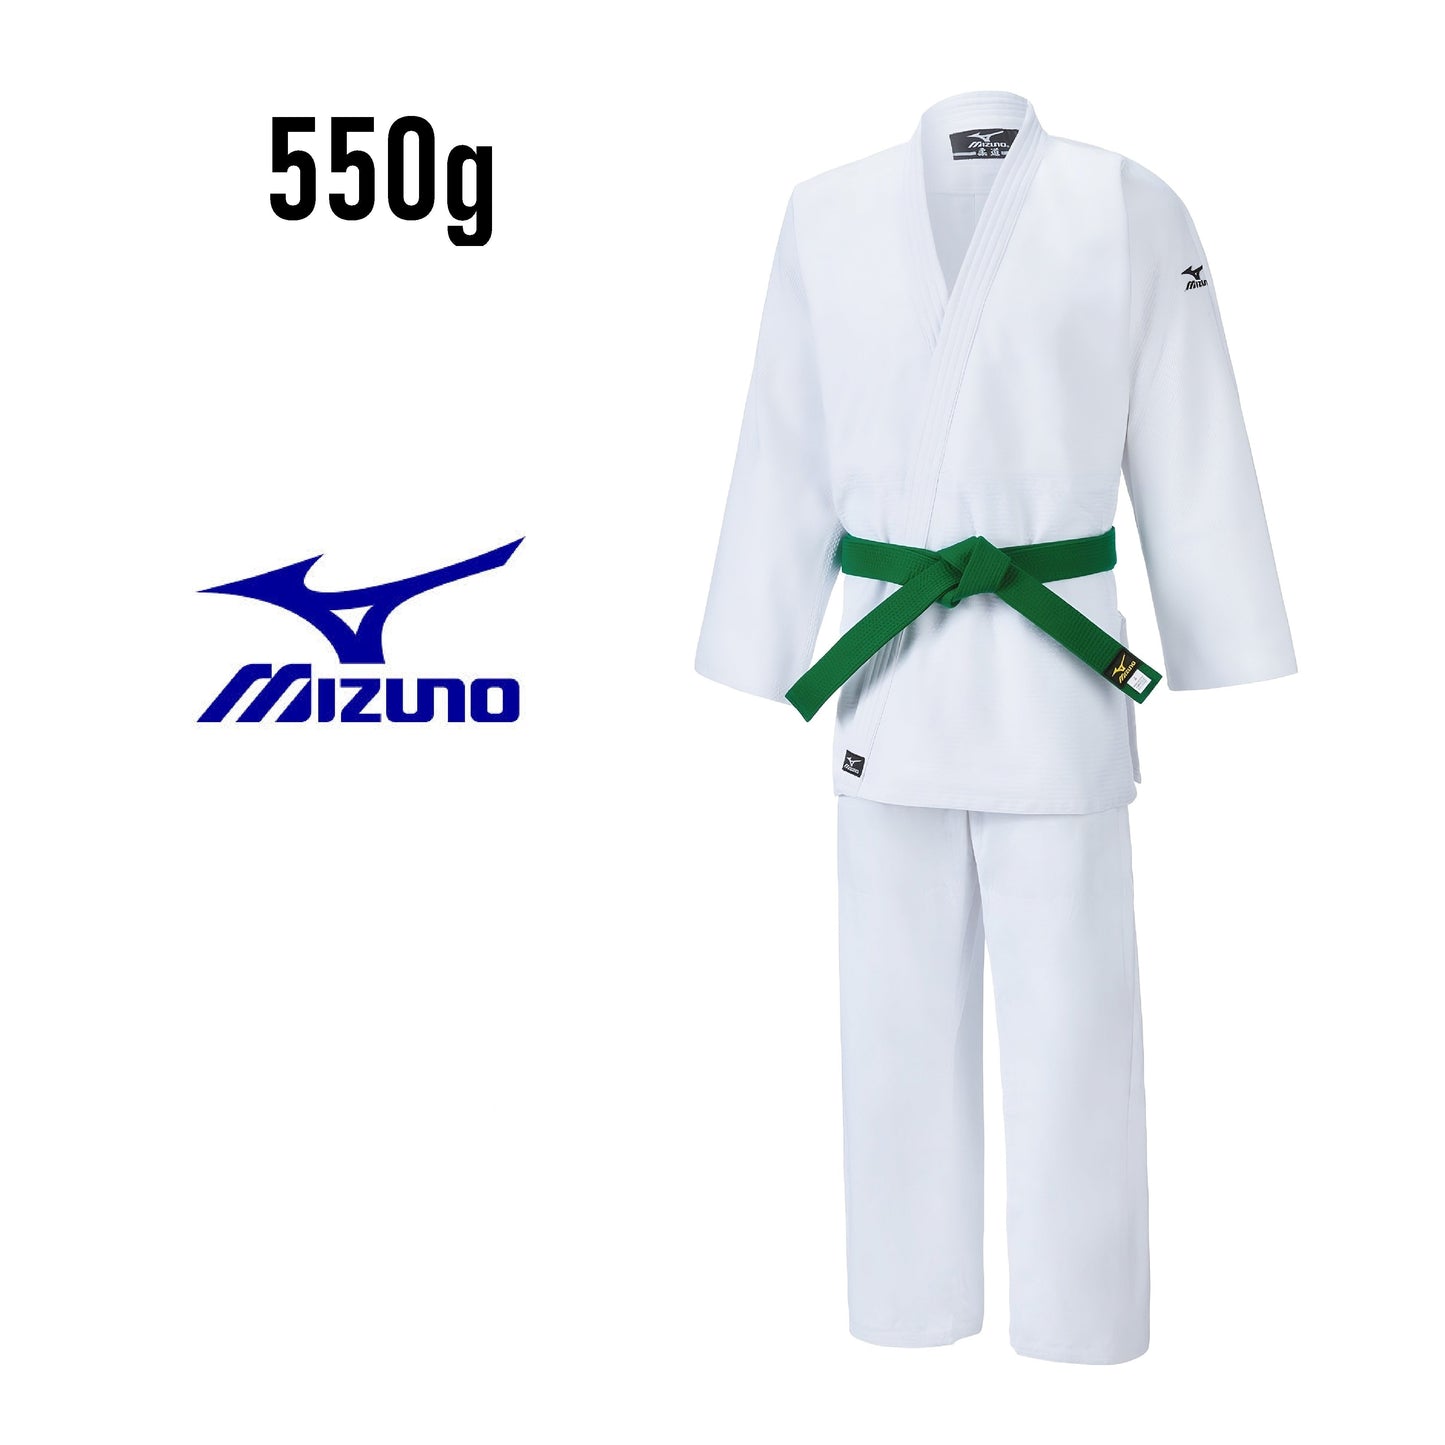 Judo-gi MIZUNO HAYATO 550G blanc